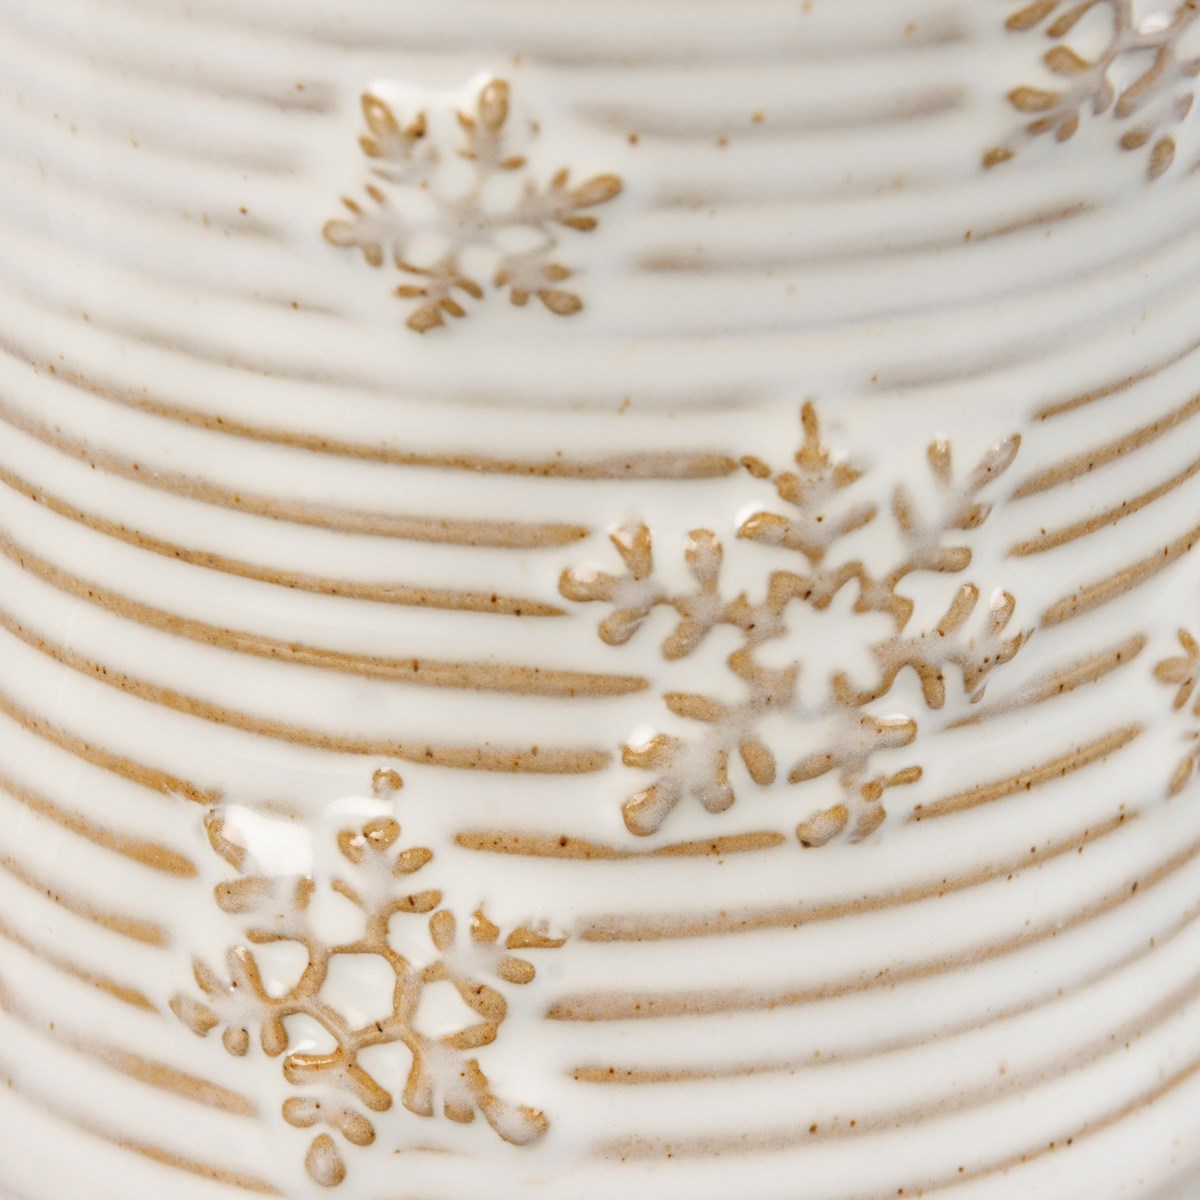 Snowflake Mug - Stoneware